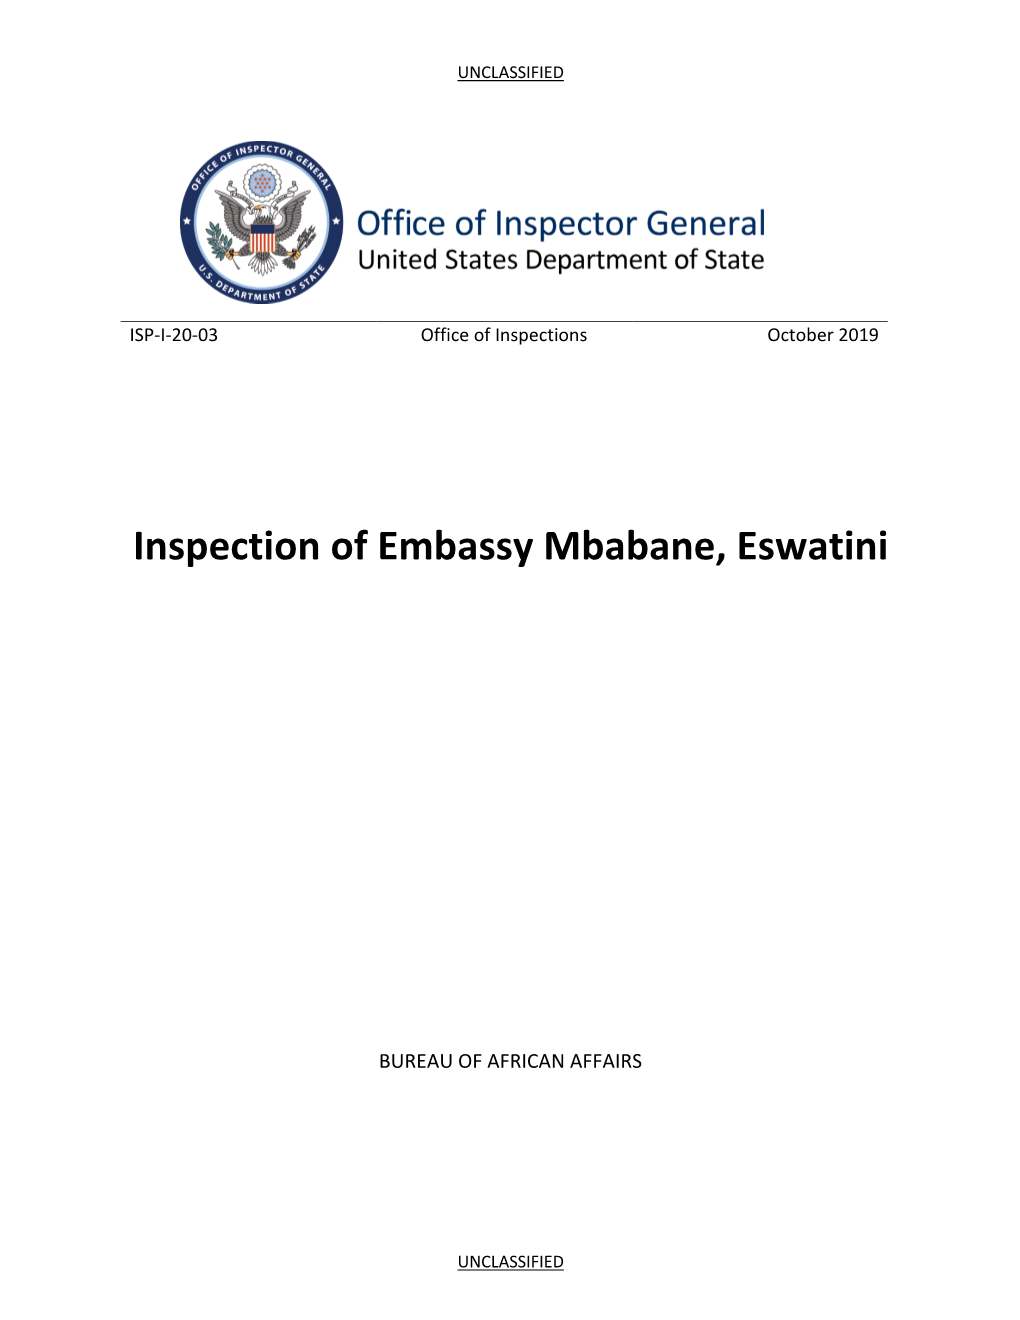 Inspection of Embassy, Mbabane, Eswatini, ISP-I-20-03